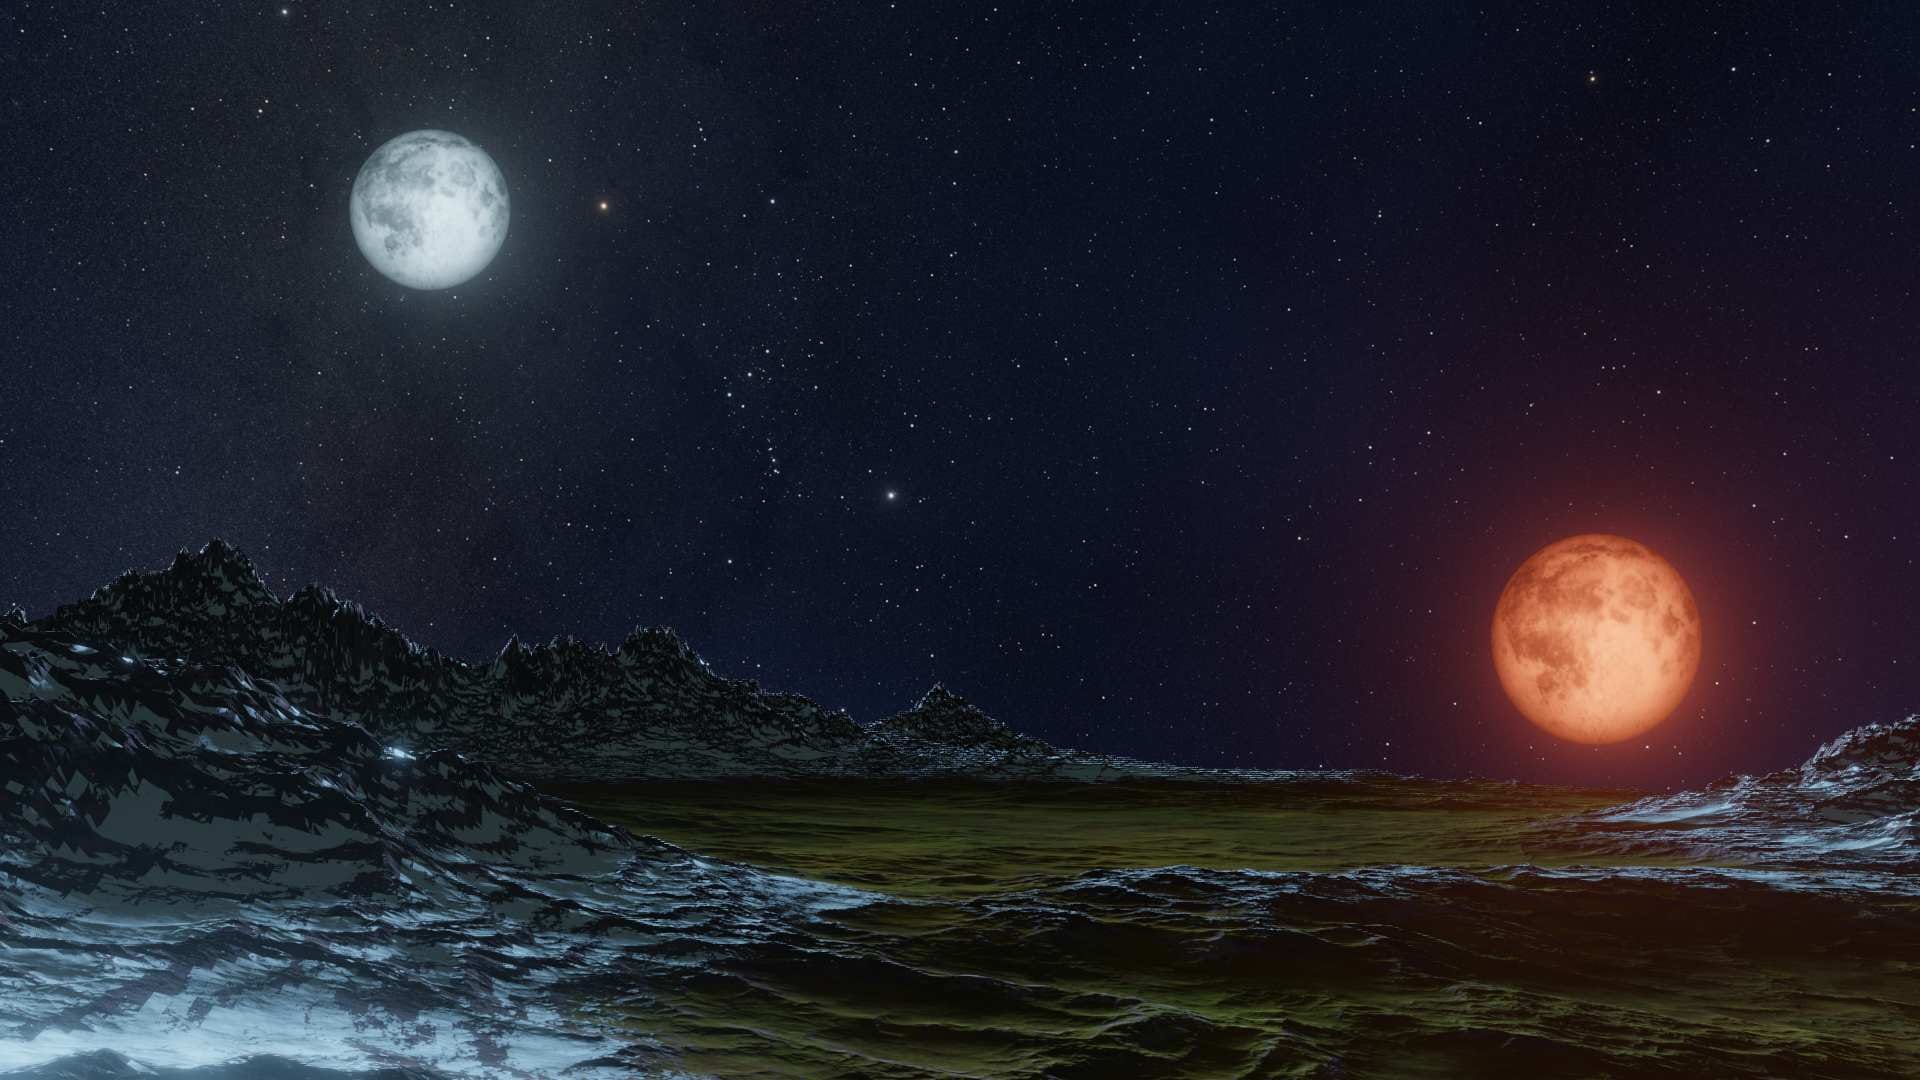 L'illusion lunaire : pourquoi la Lune paraît-elle si grosse?